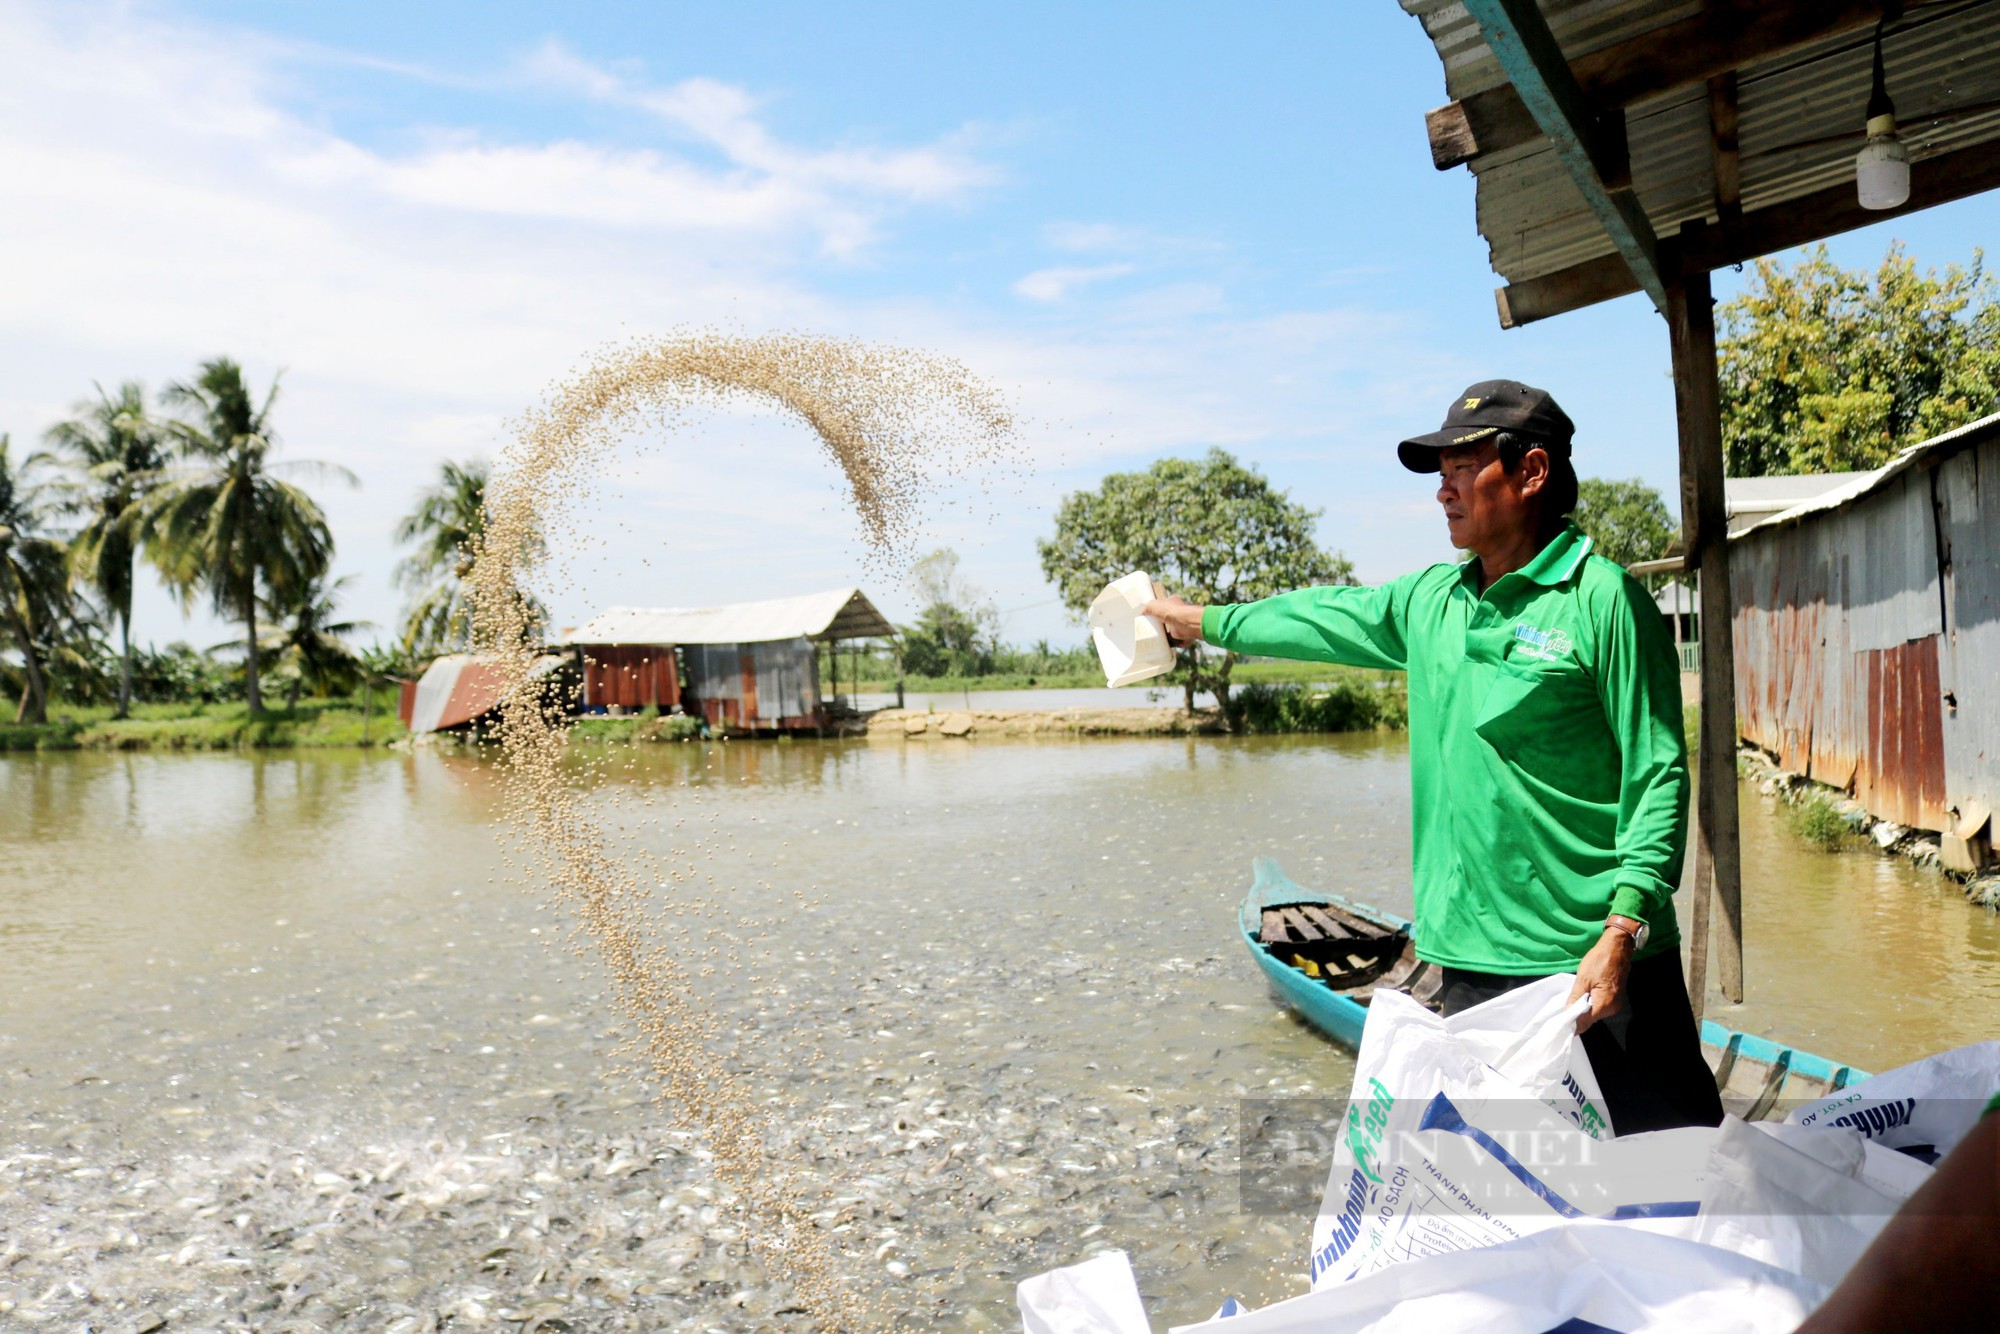 Chuyện về lão nông ở An Giang 20 năm nuôi cá tra lấy lãi lập quỹ từ thiện gia đình giúp người nghèo - Ảnh 2.